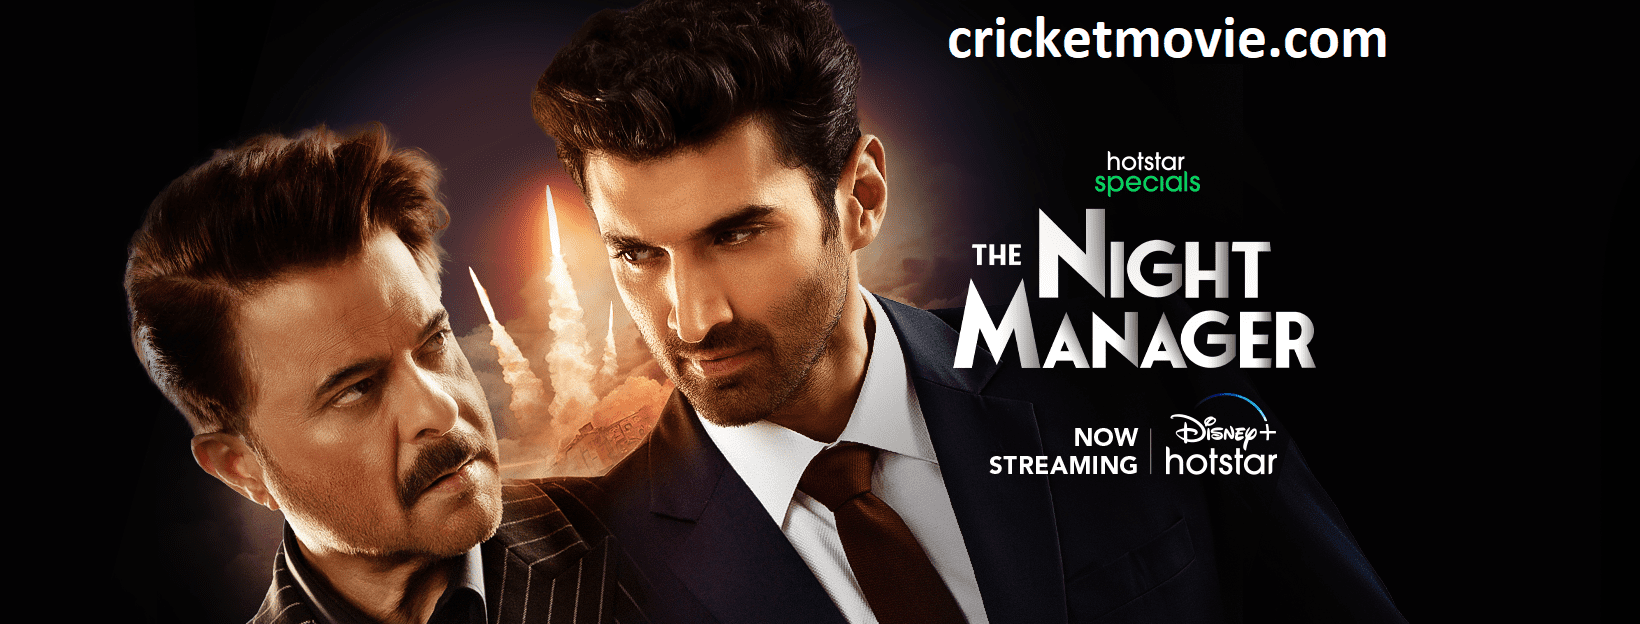 The Night Manager Review-cricketmovie.com